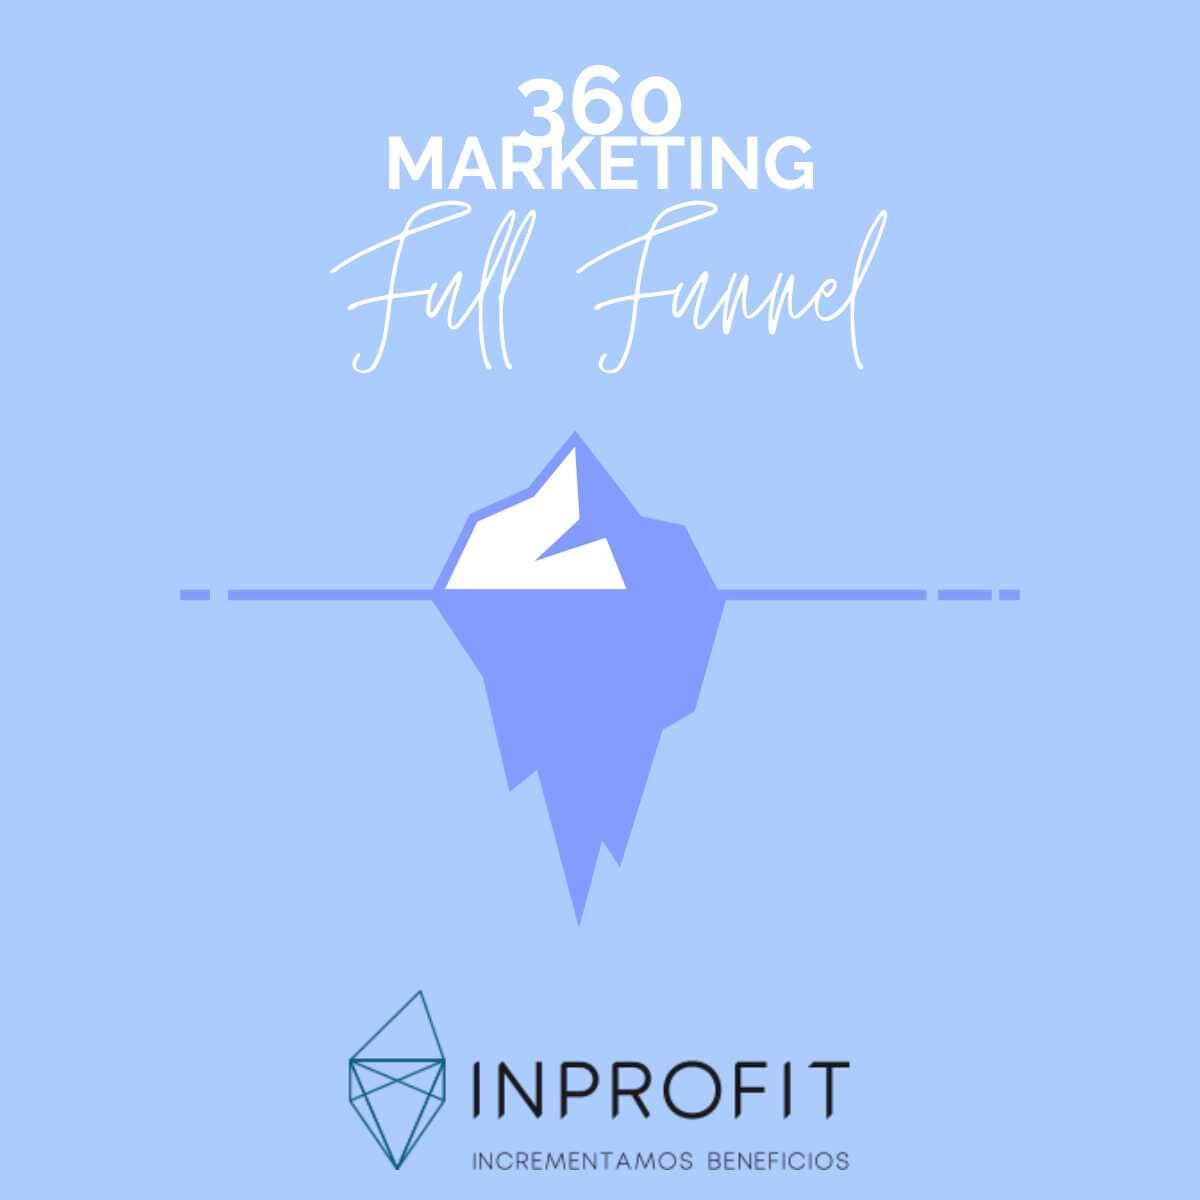 360 marketing ¿Cómo impulsar tu marca en todo el full funnel?